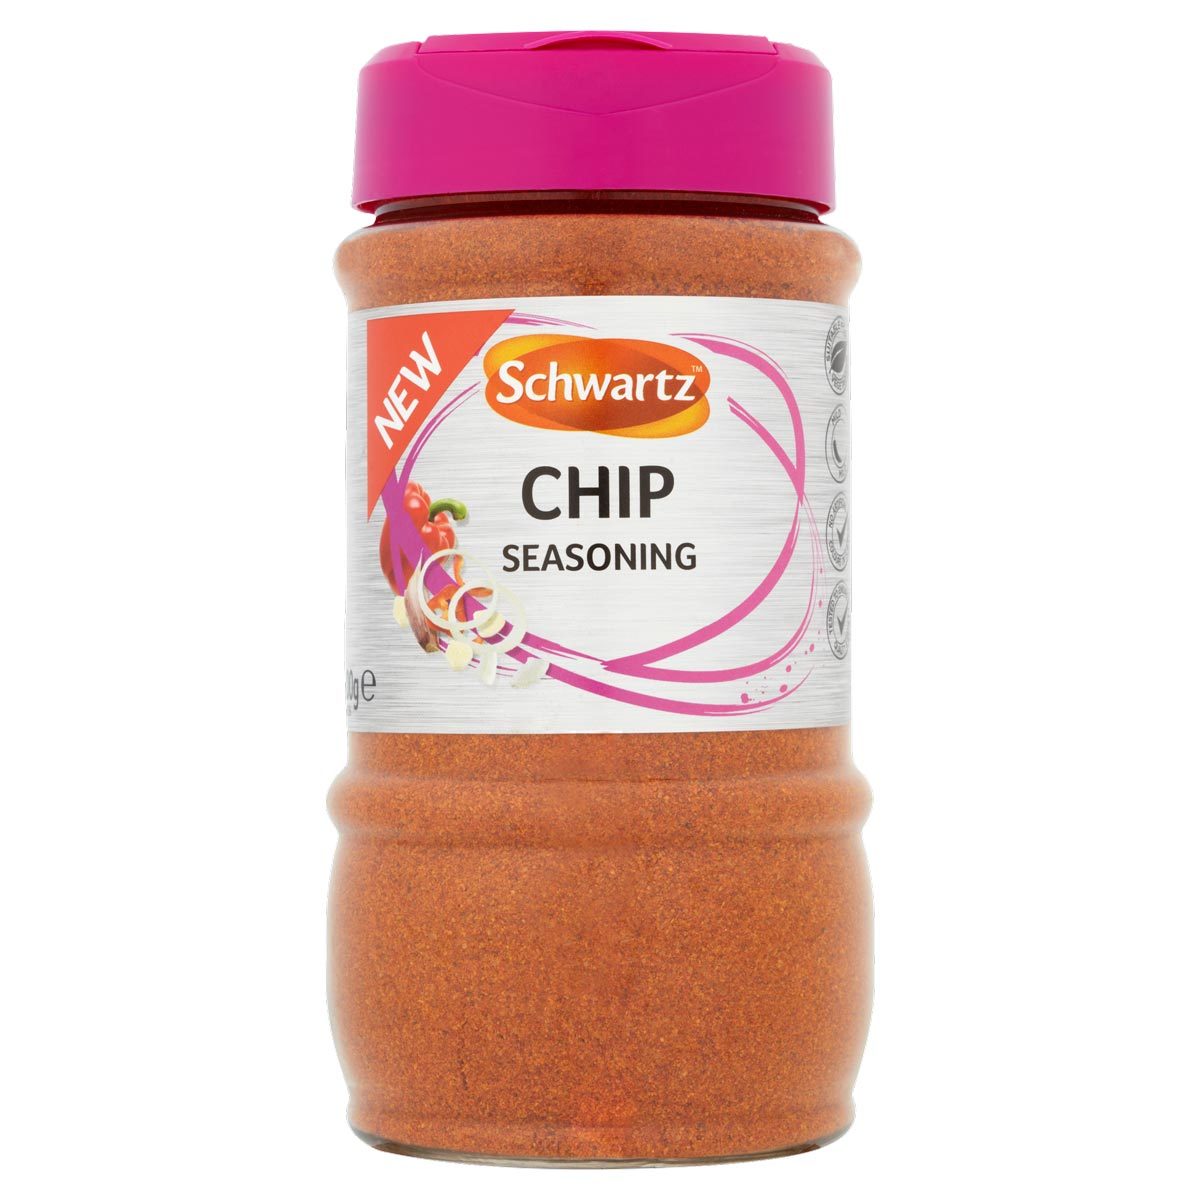 Schwartz Chip Seasoning, 300g - McGrocer